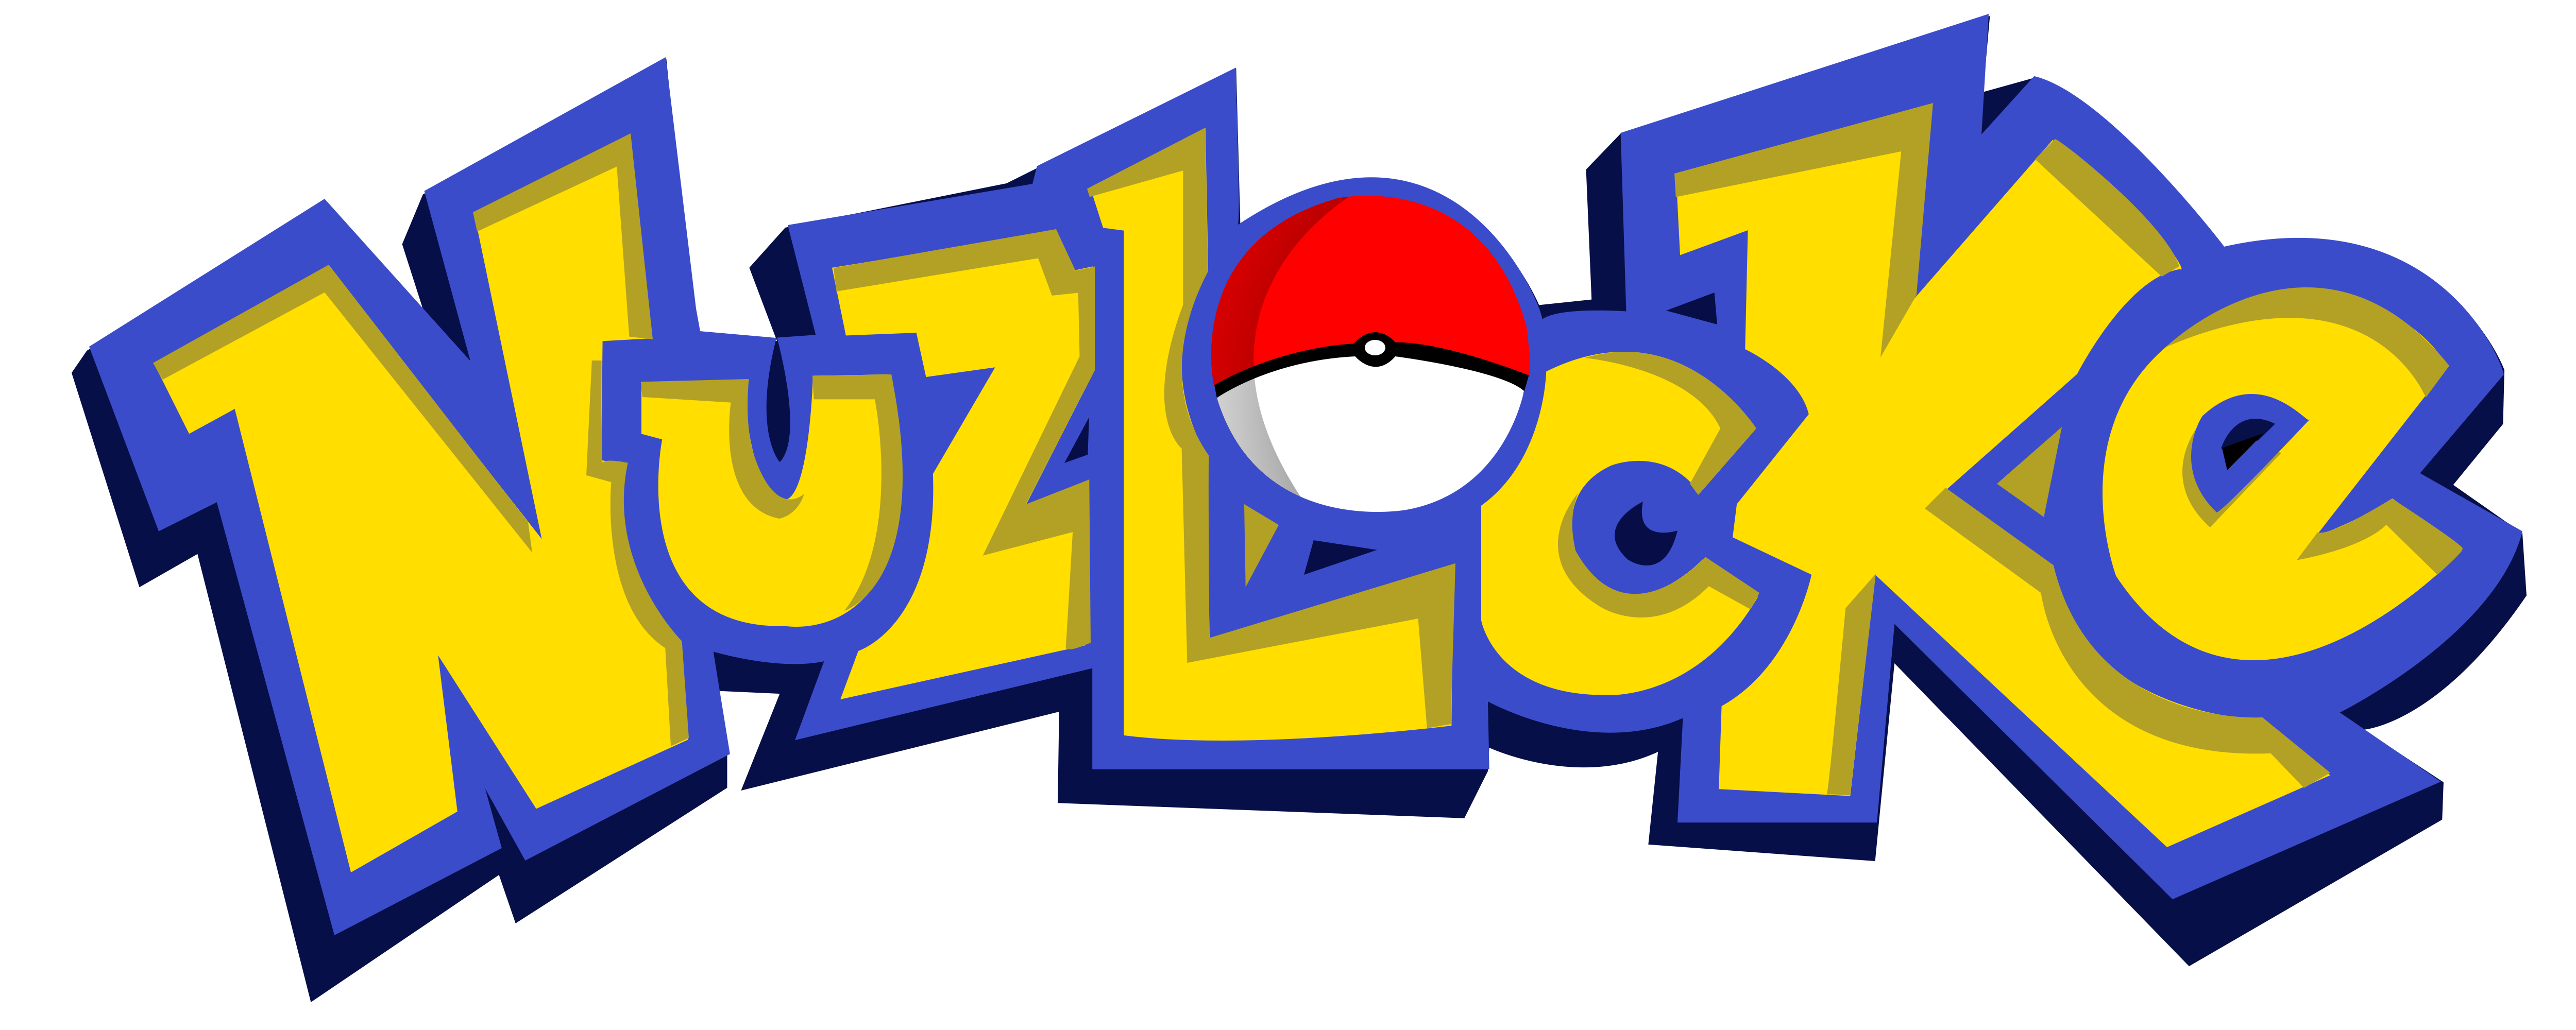 nuzlocke pokemon logo #1433